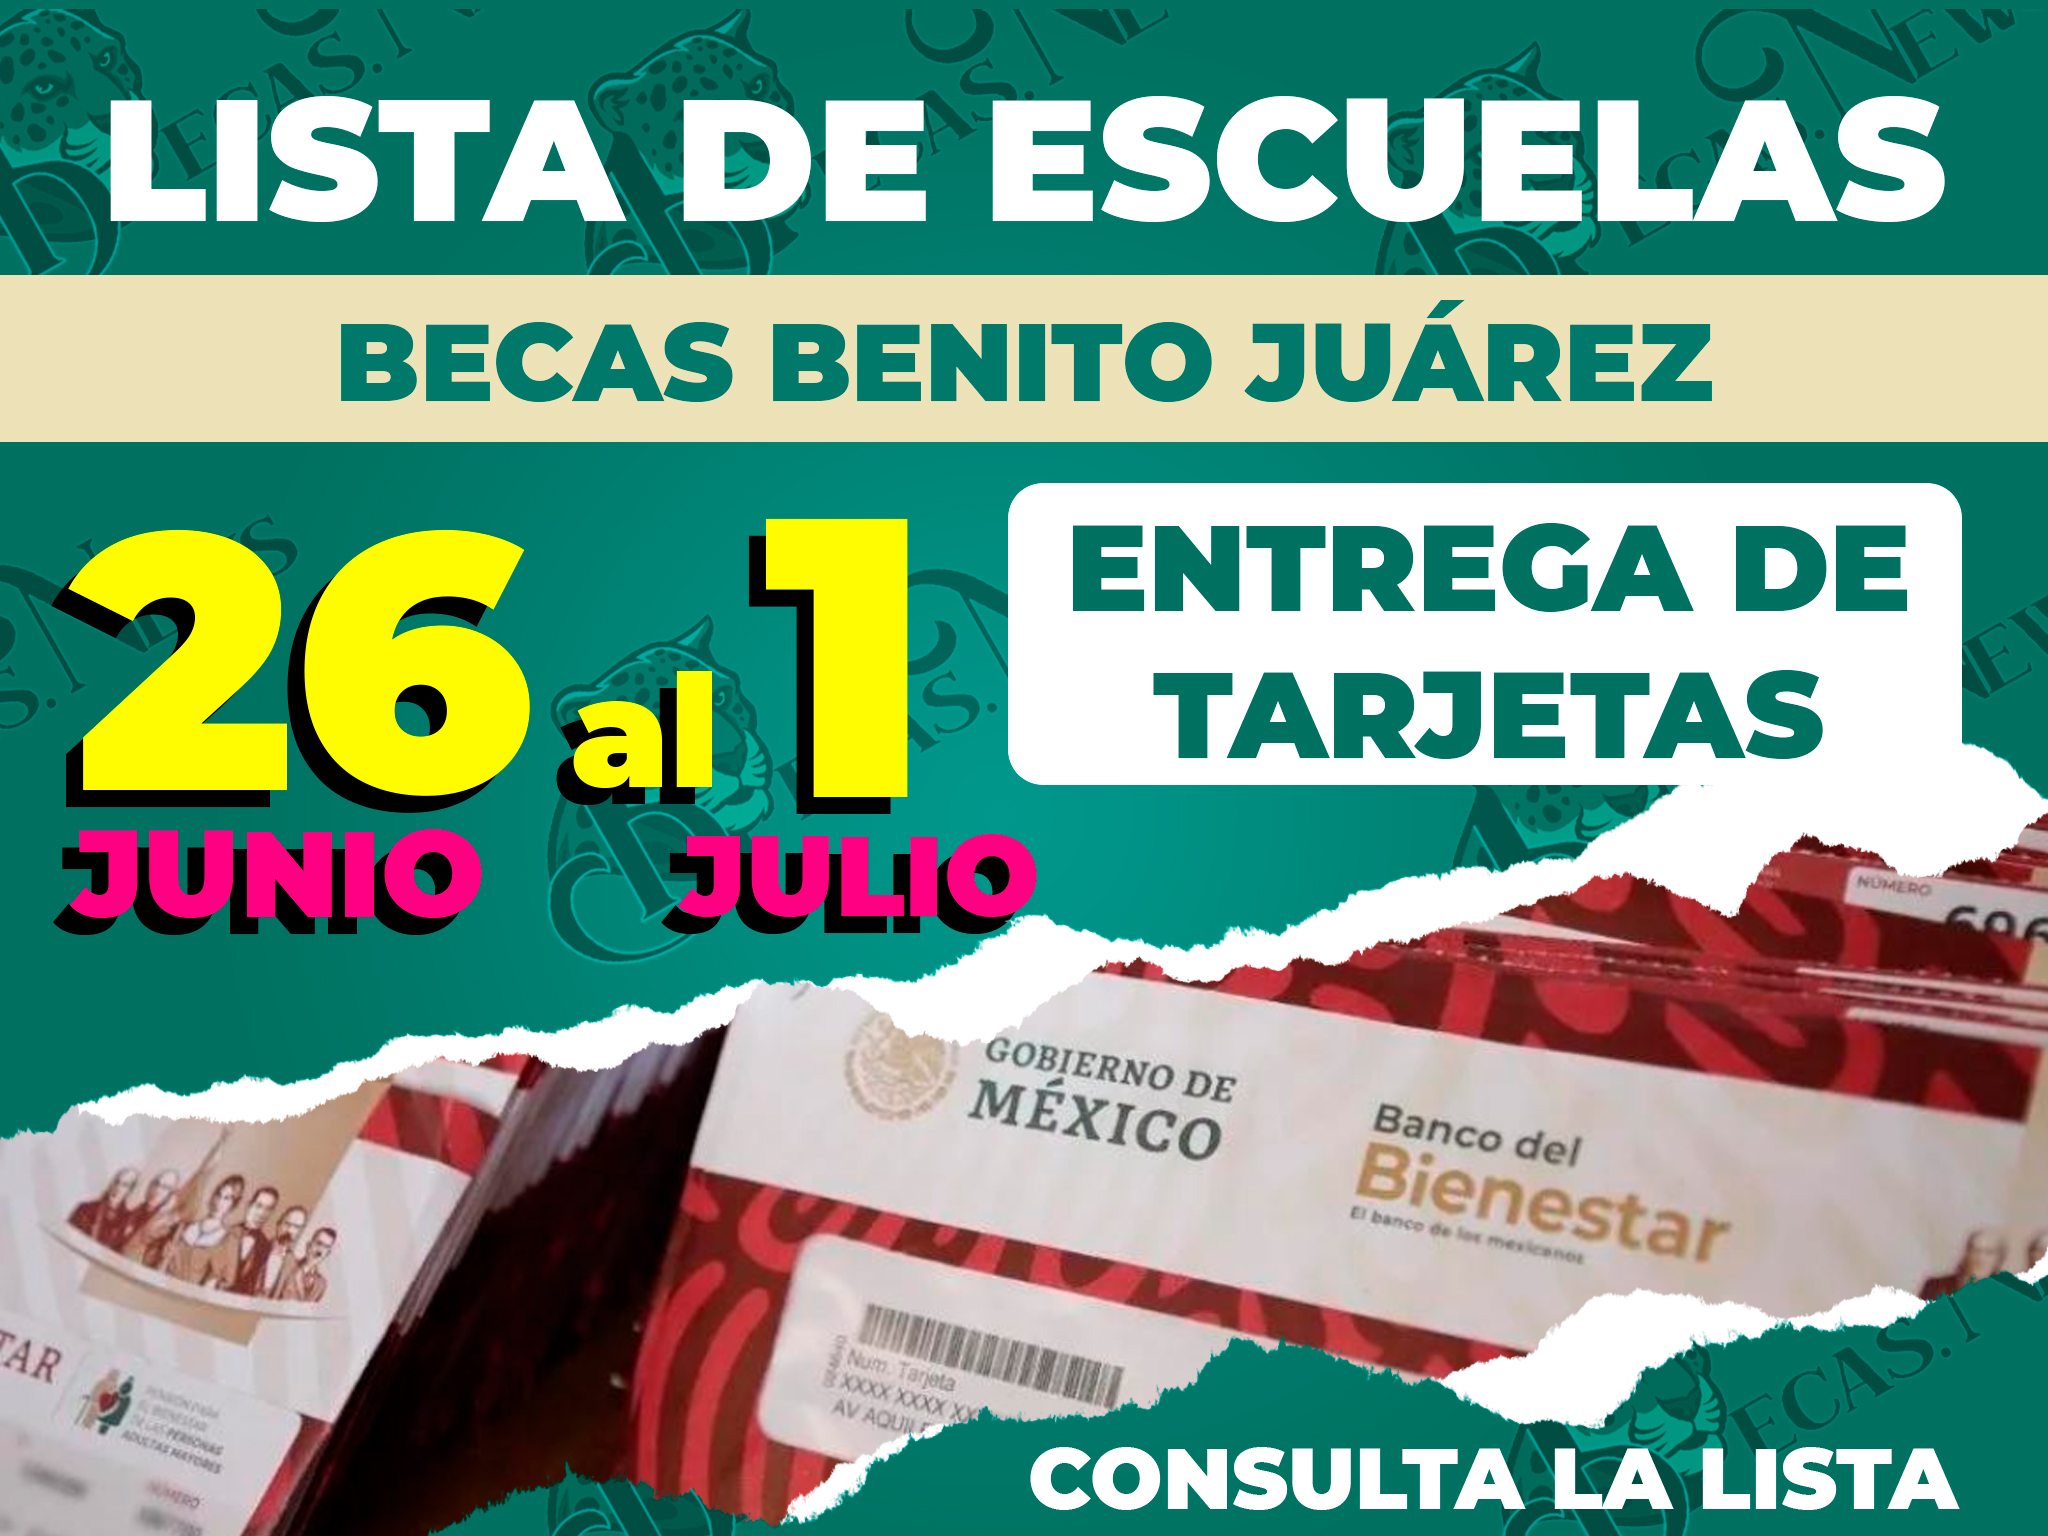 ¡A partir de hoy 26 de junio!, instituciones recibirán visitas para entregas de Tarjetas| checa la lista: Becas Benito Juárez